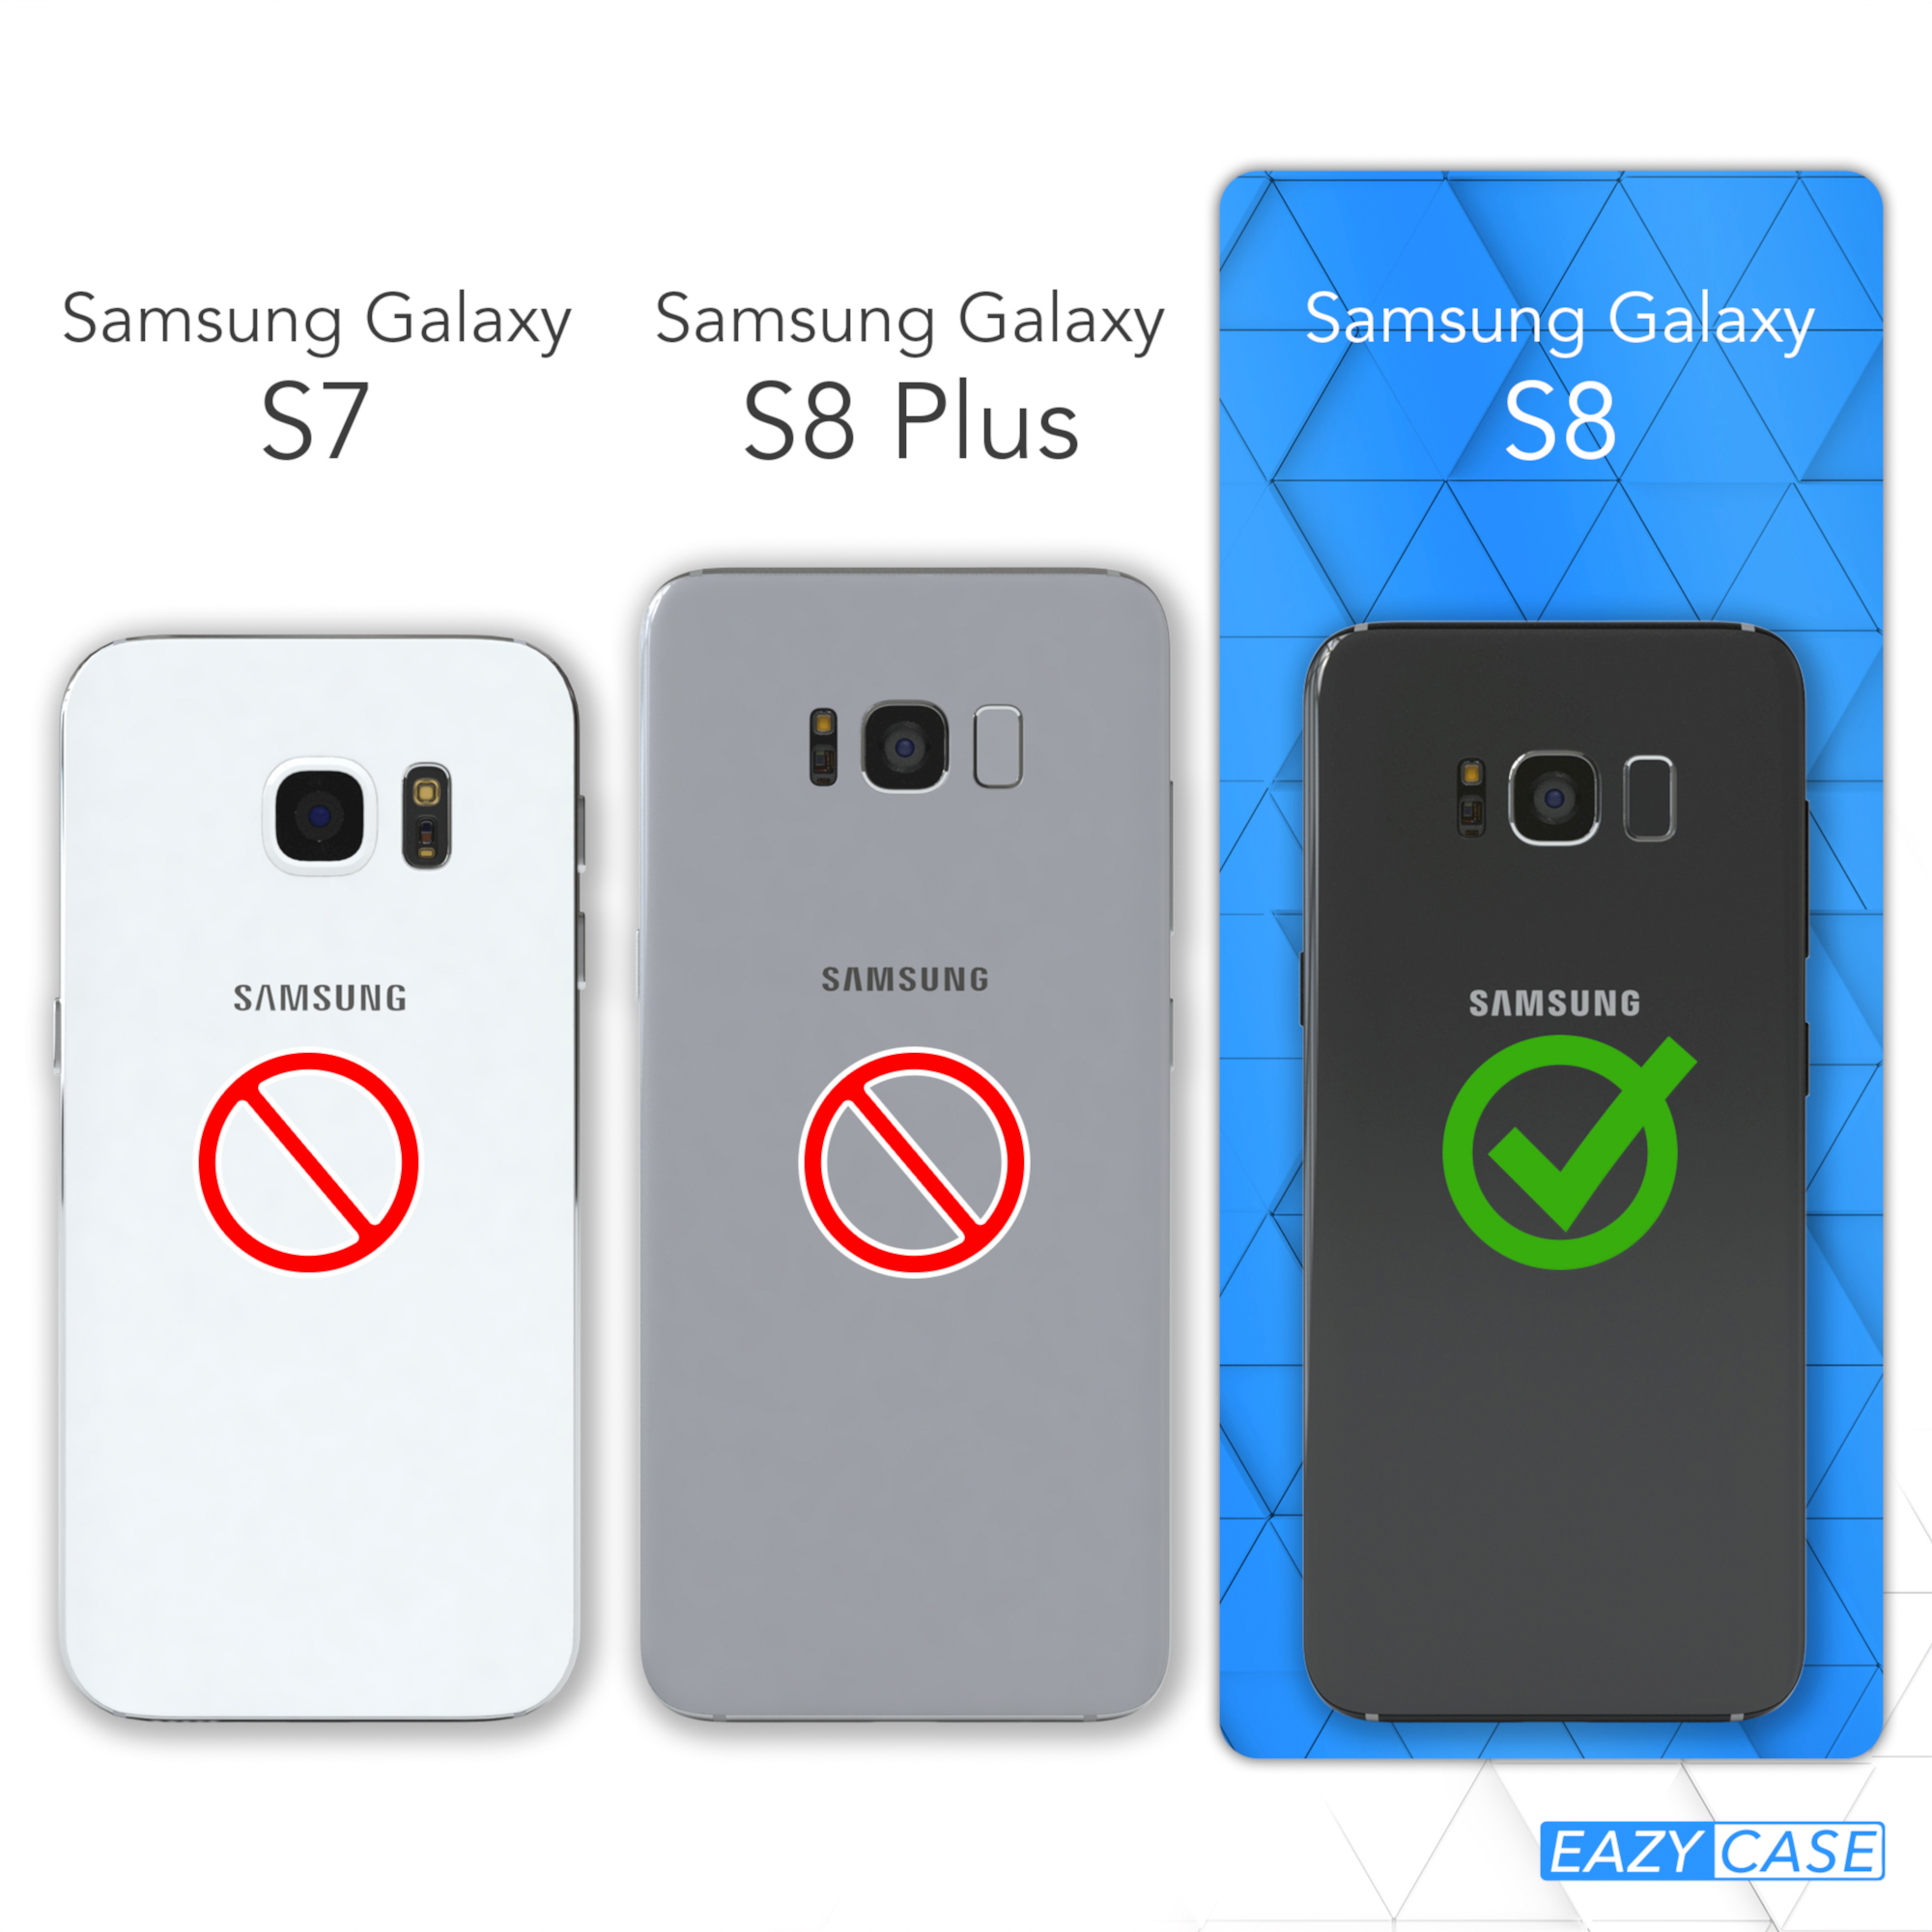 Samsung, Galaxy Beige EAZY S8, Umhängeband, Clear CASE Umhängetasche, mit Cover Taupe